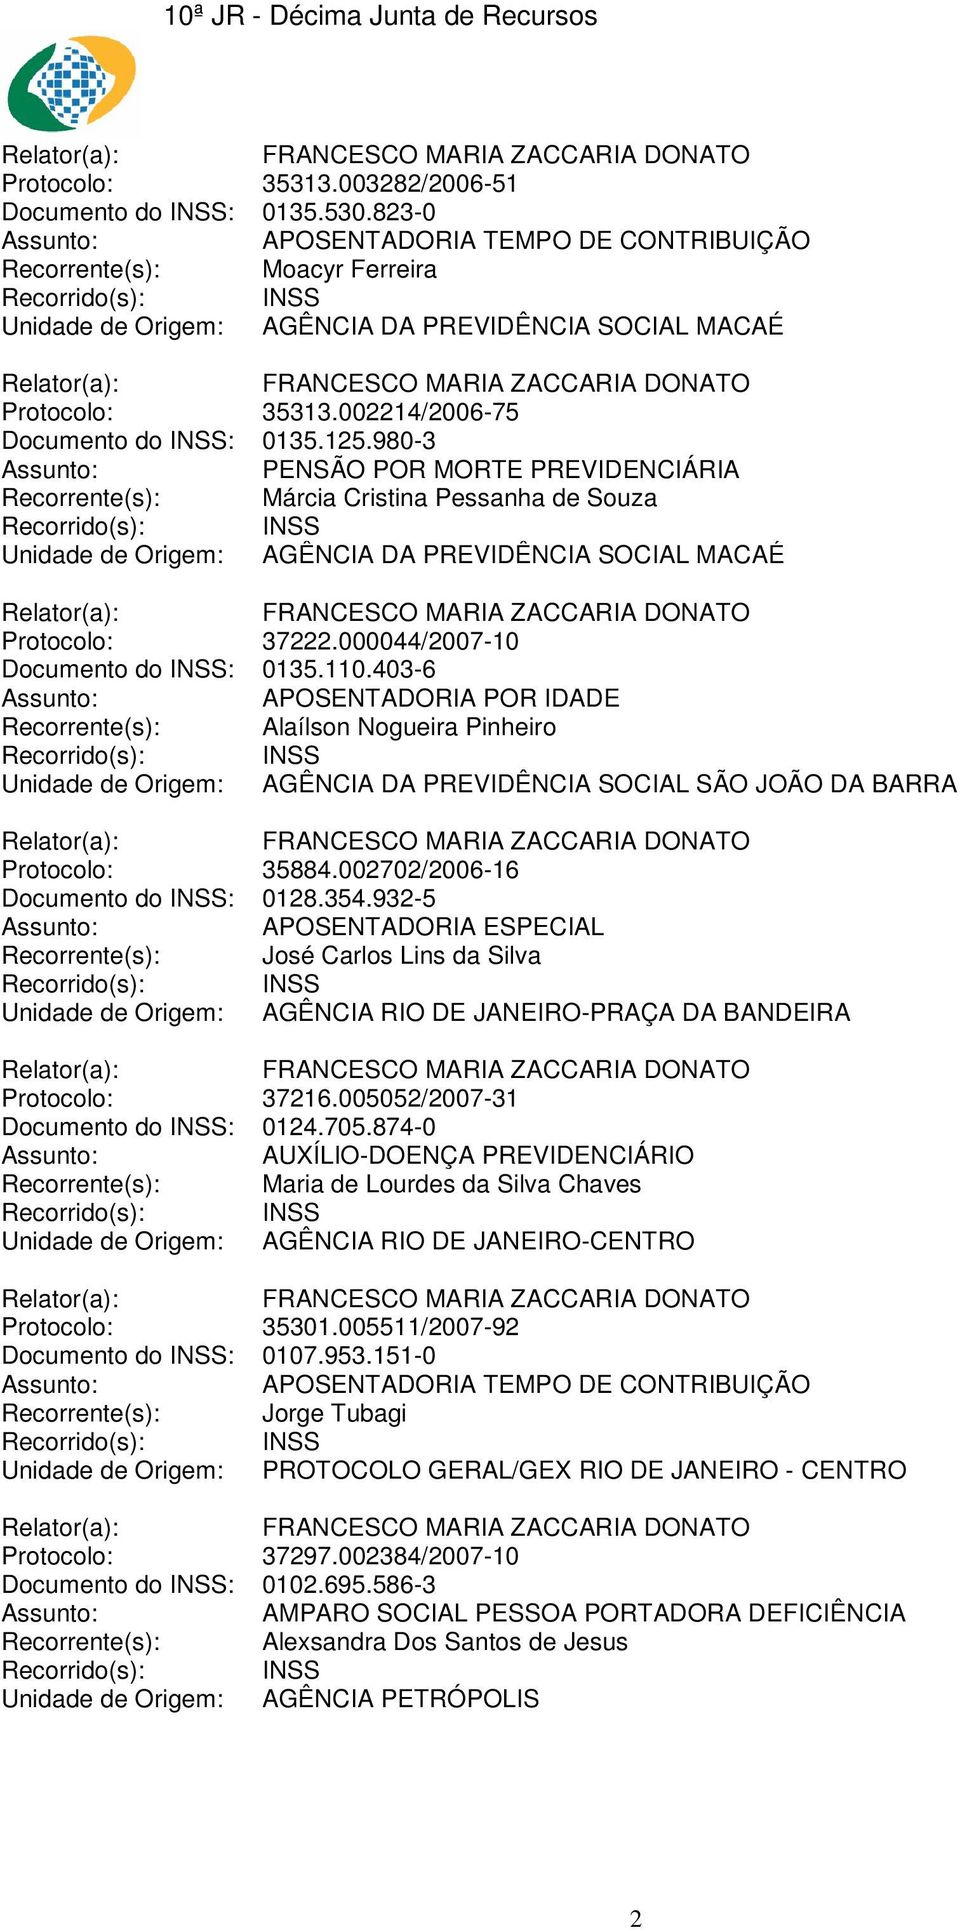 000044/2007-10 Documento do INSS: 0135.110.403-6 APOSENTADORIA POR IDADE Recorrente(s): Alaílson Nogueira Pinheiro Unidade de Origem: AGÊNCIA DA PREVIDÊNCIA SOCIAL SÃO JOÃO DA BARRA Protocolo: 35884.